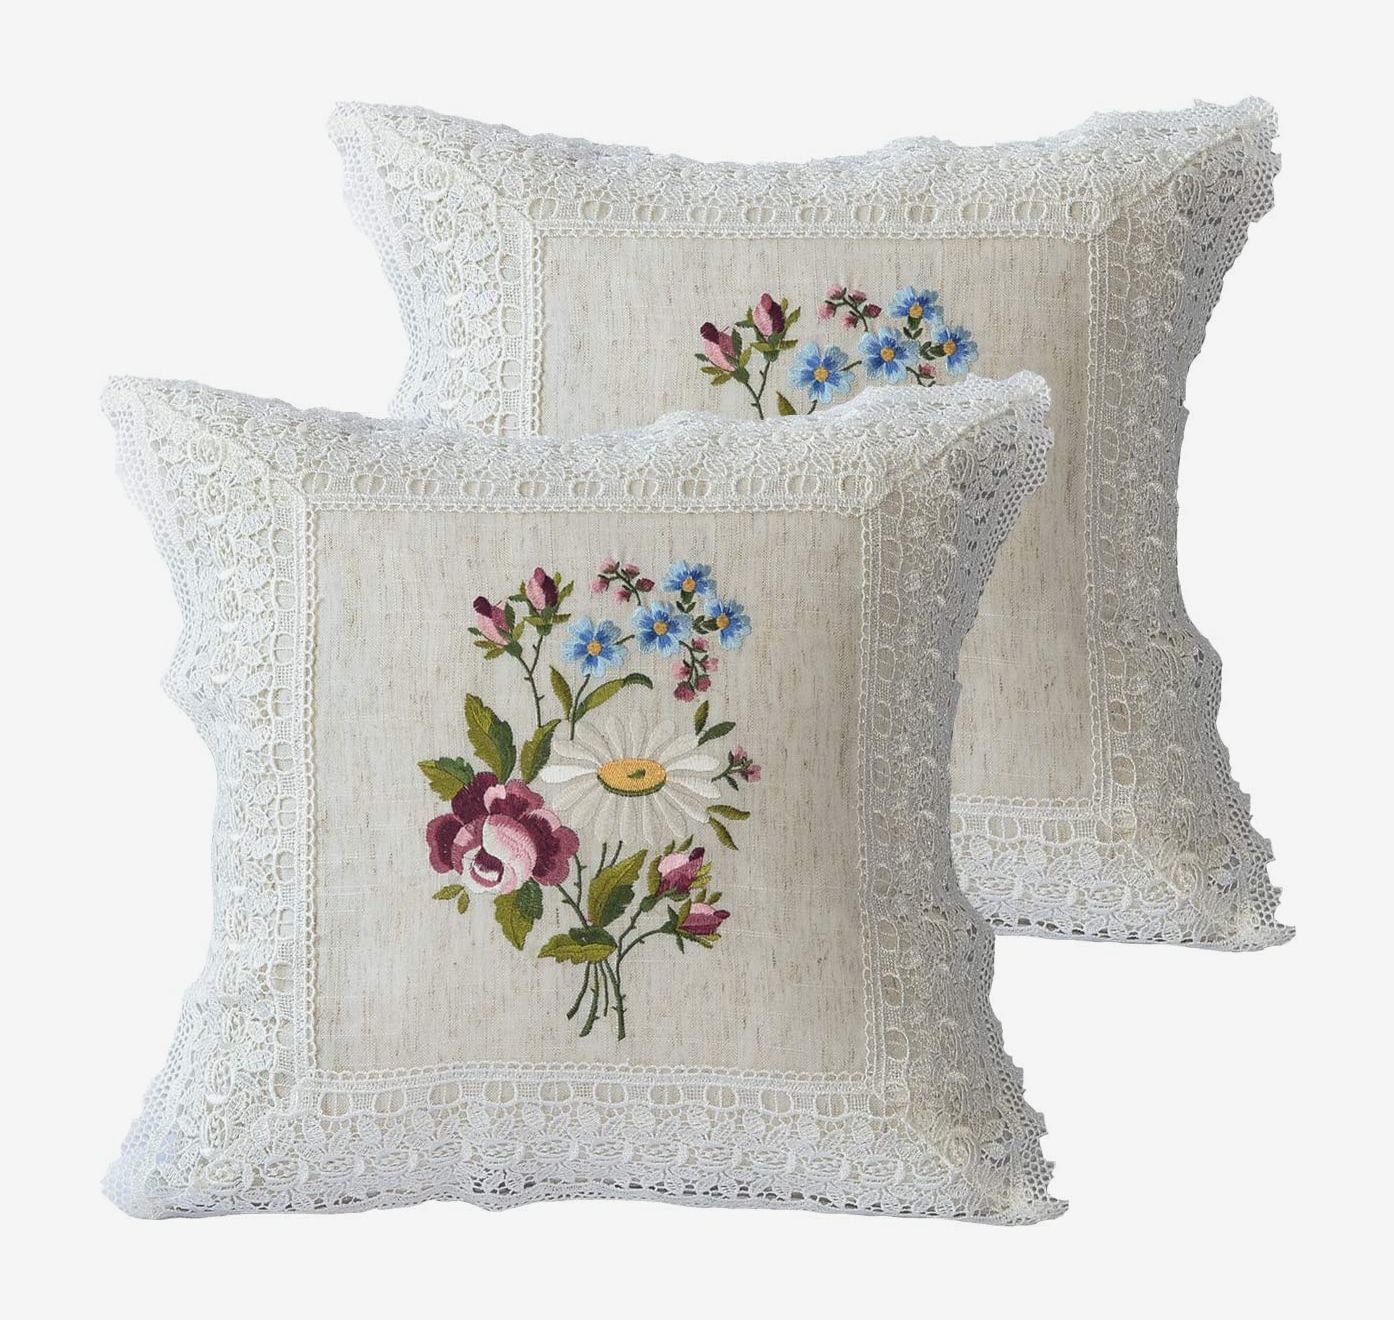 Floral Velvet Throw Pillows Vintage Decorative Pillow Cover Boho Velvet Cushion Cover